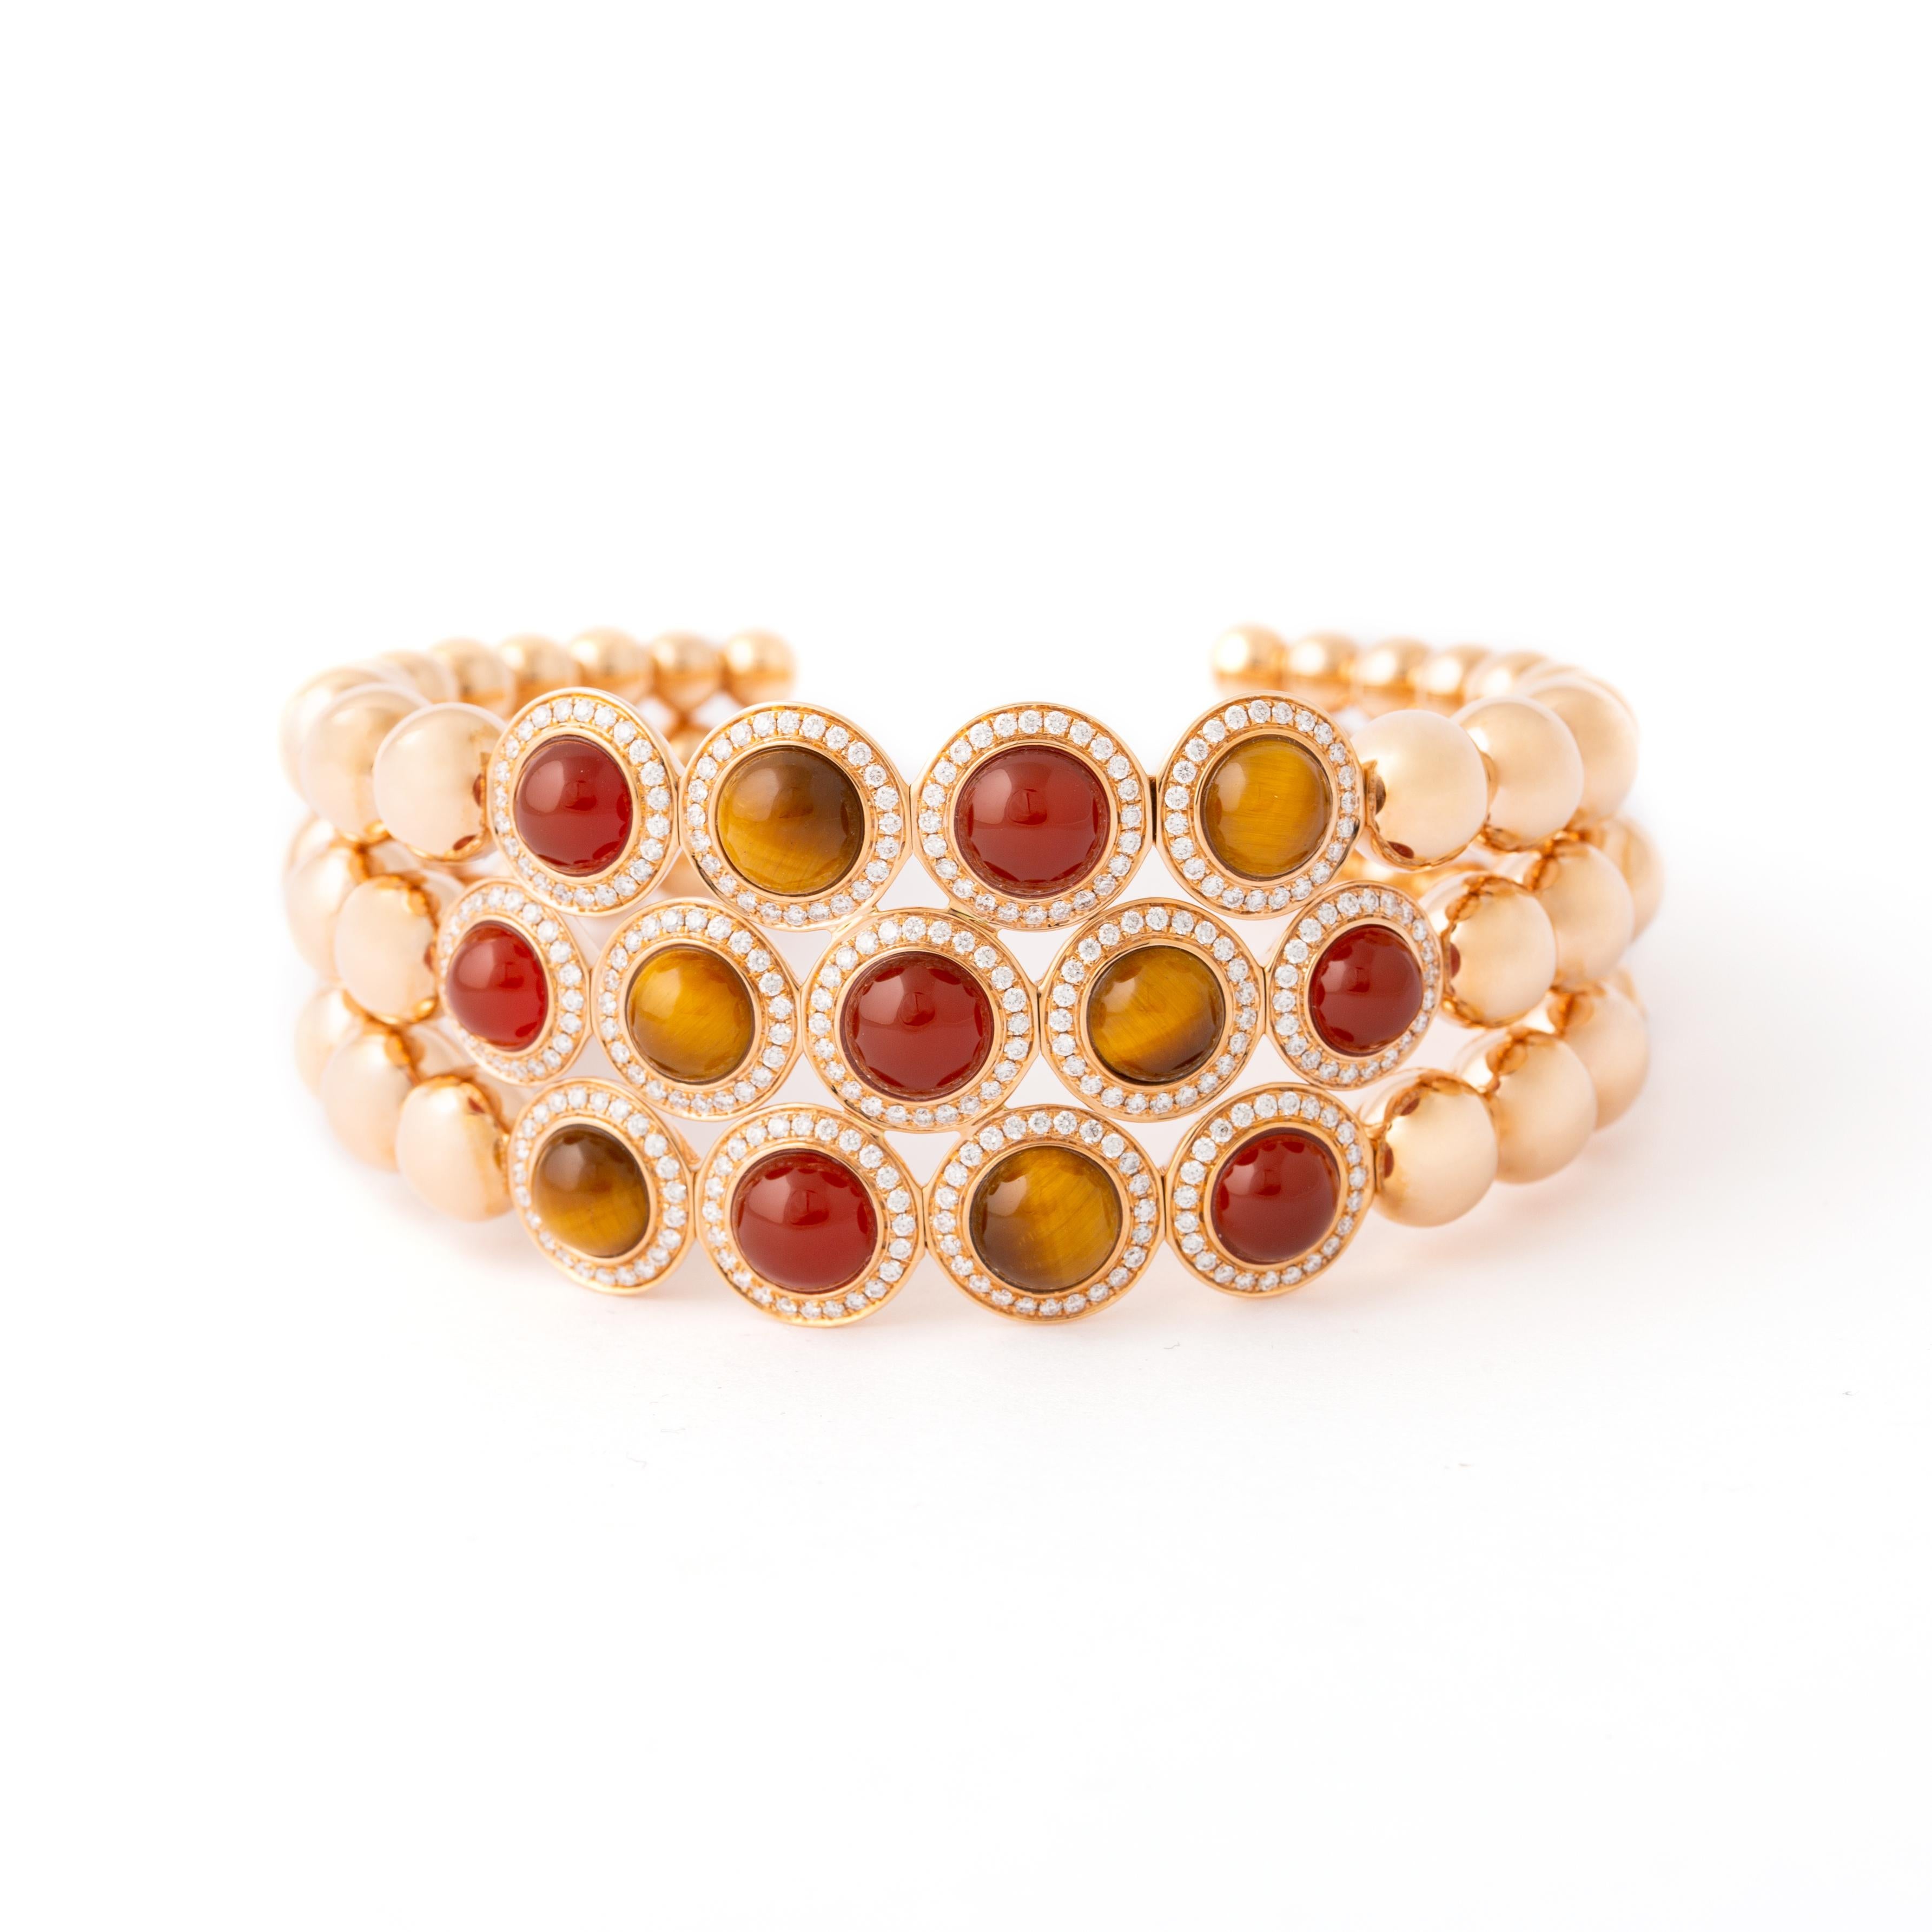 Voici notre superbe bracelet en or rose 18kt, un mélange parfait d'élégance et de sophistication. Elle est ornée de 302 diamants éblouissants pesant 1,47 carat, de 7 cornalines vibrantes totalisant 6,81 carats et de 6 pierres précieuses œil de tigre